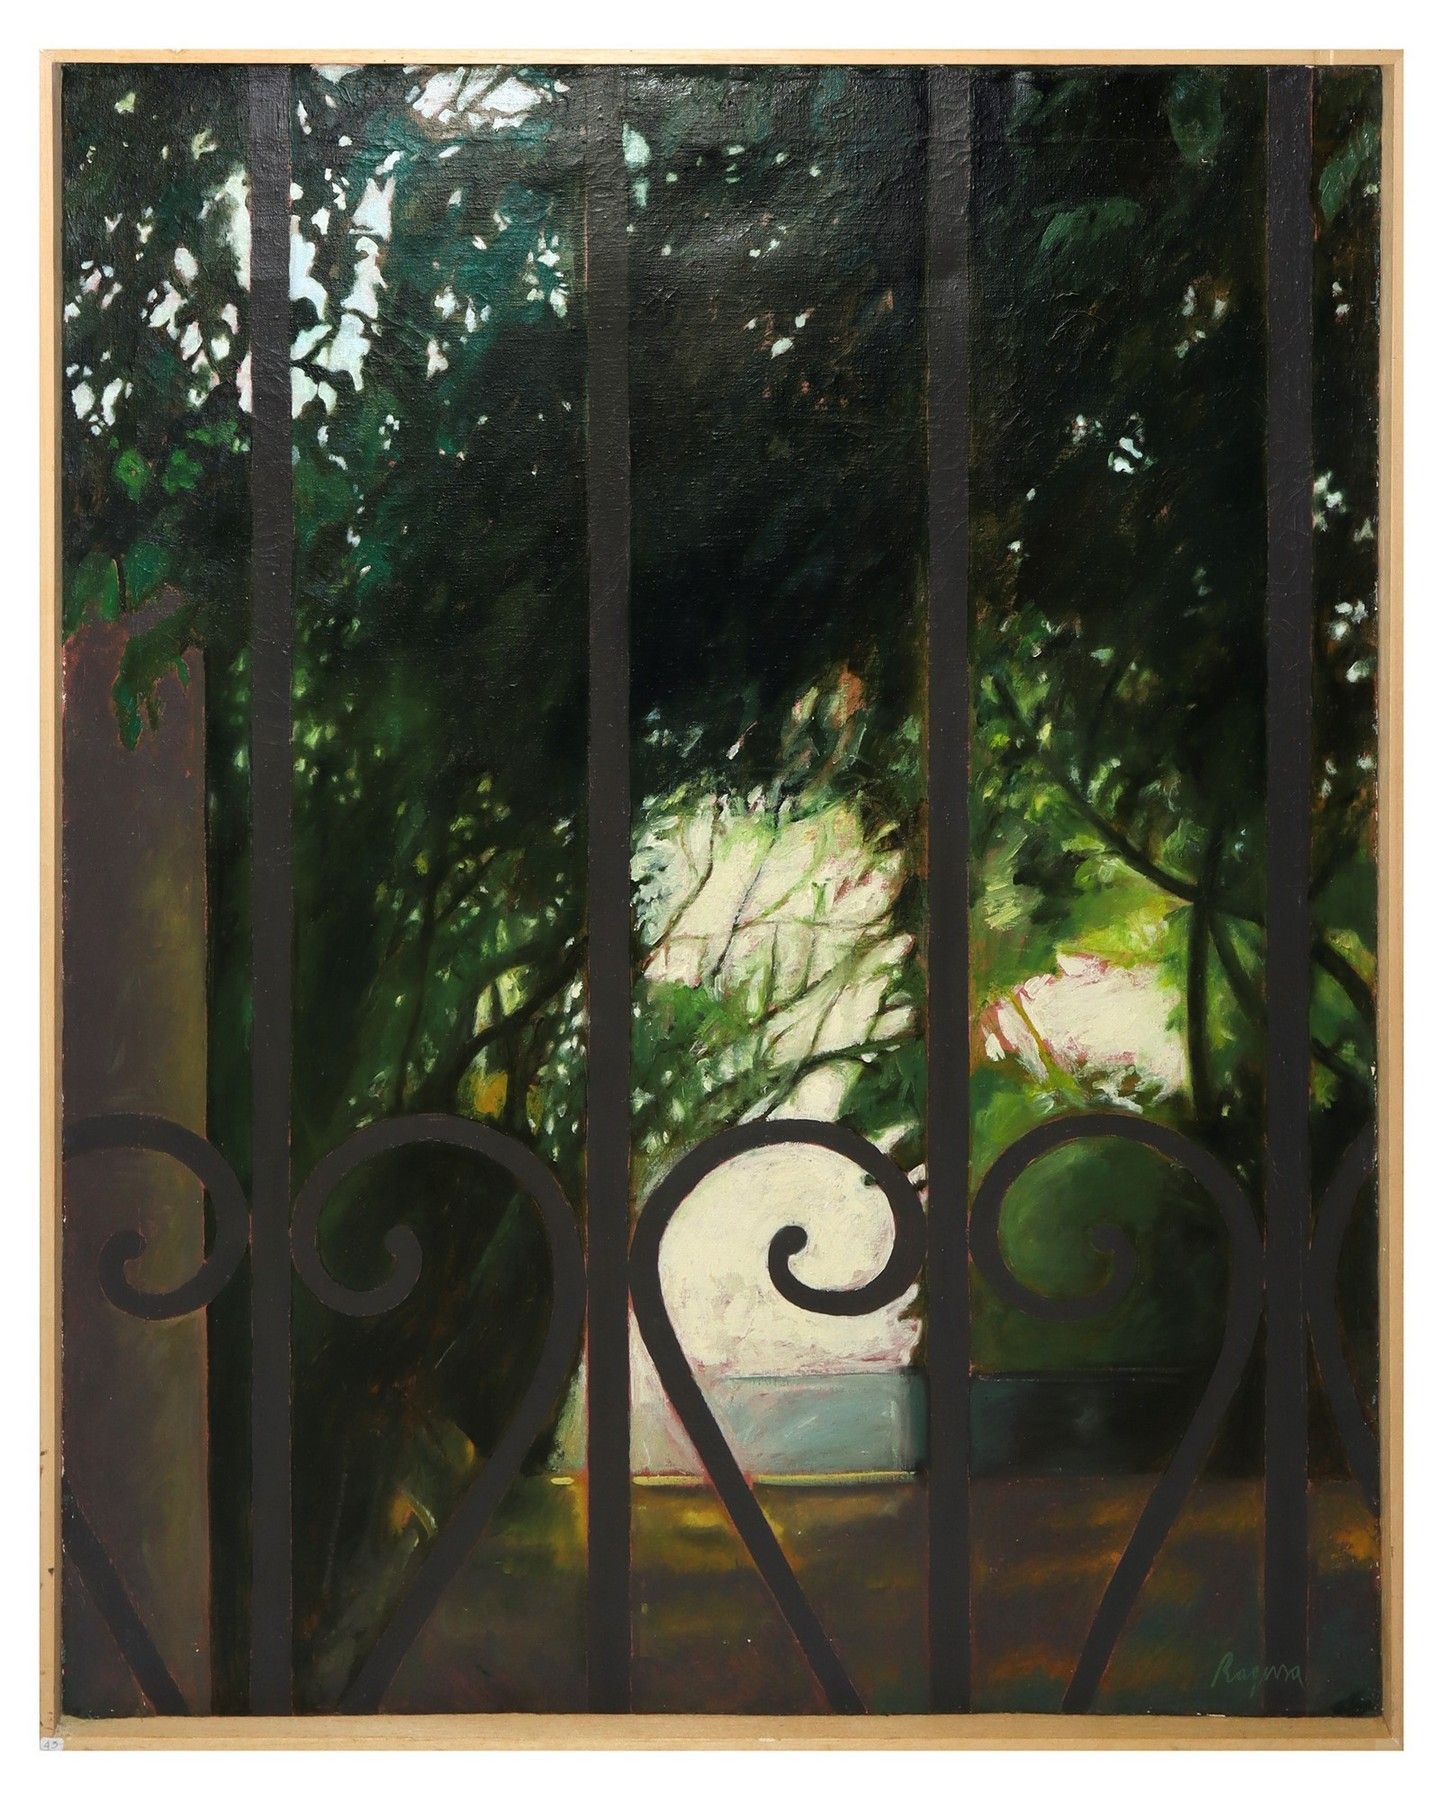 Lucia Ragusa The garden , 1999 Oil painting on linen canvas Cm 100x79